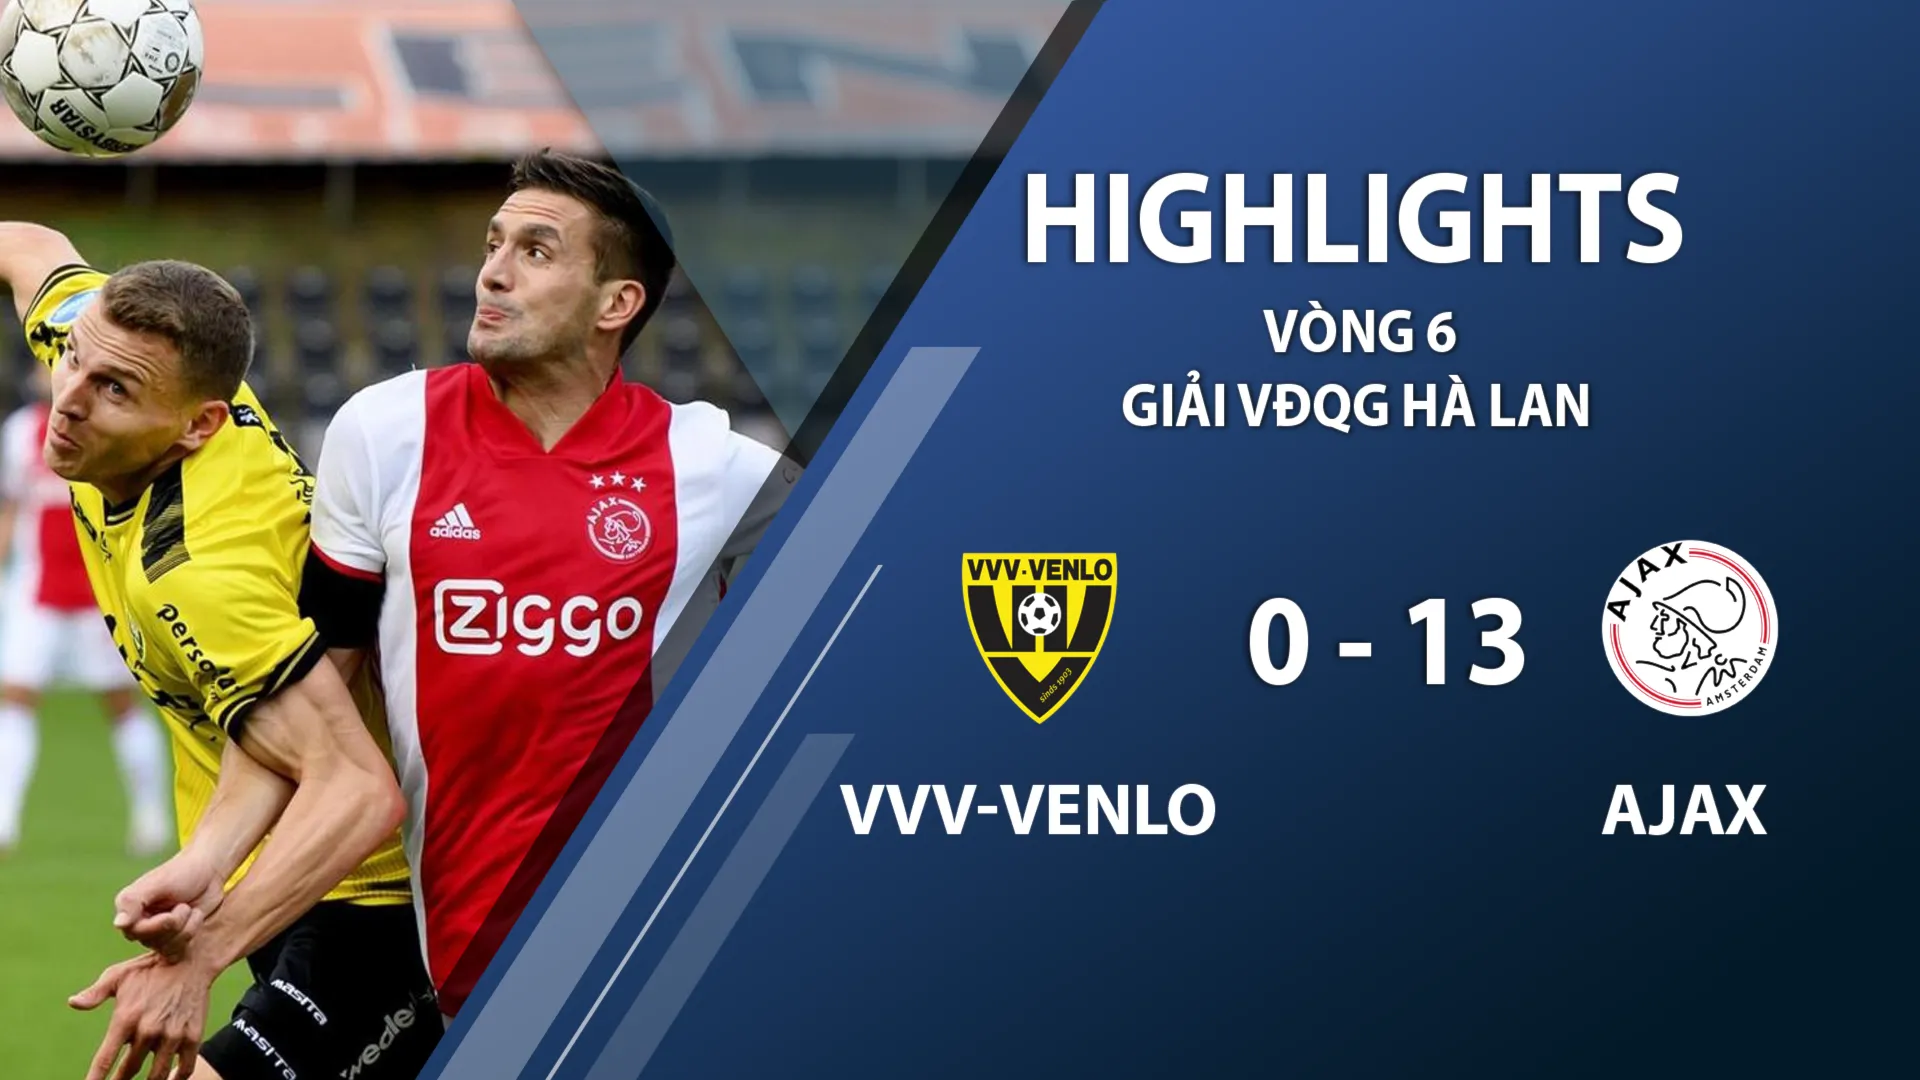 Highlights VVV-Venlo 0-13 Ajax (vòng 6 giải VĐQG Hà Lan 2020/21)